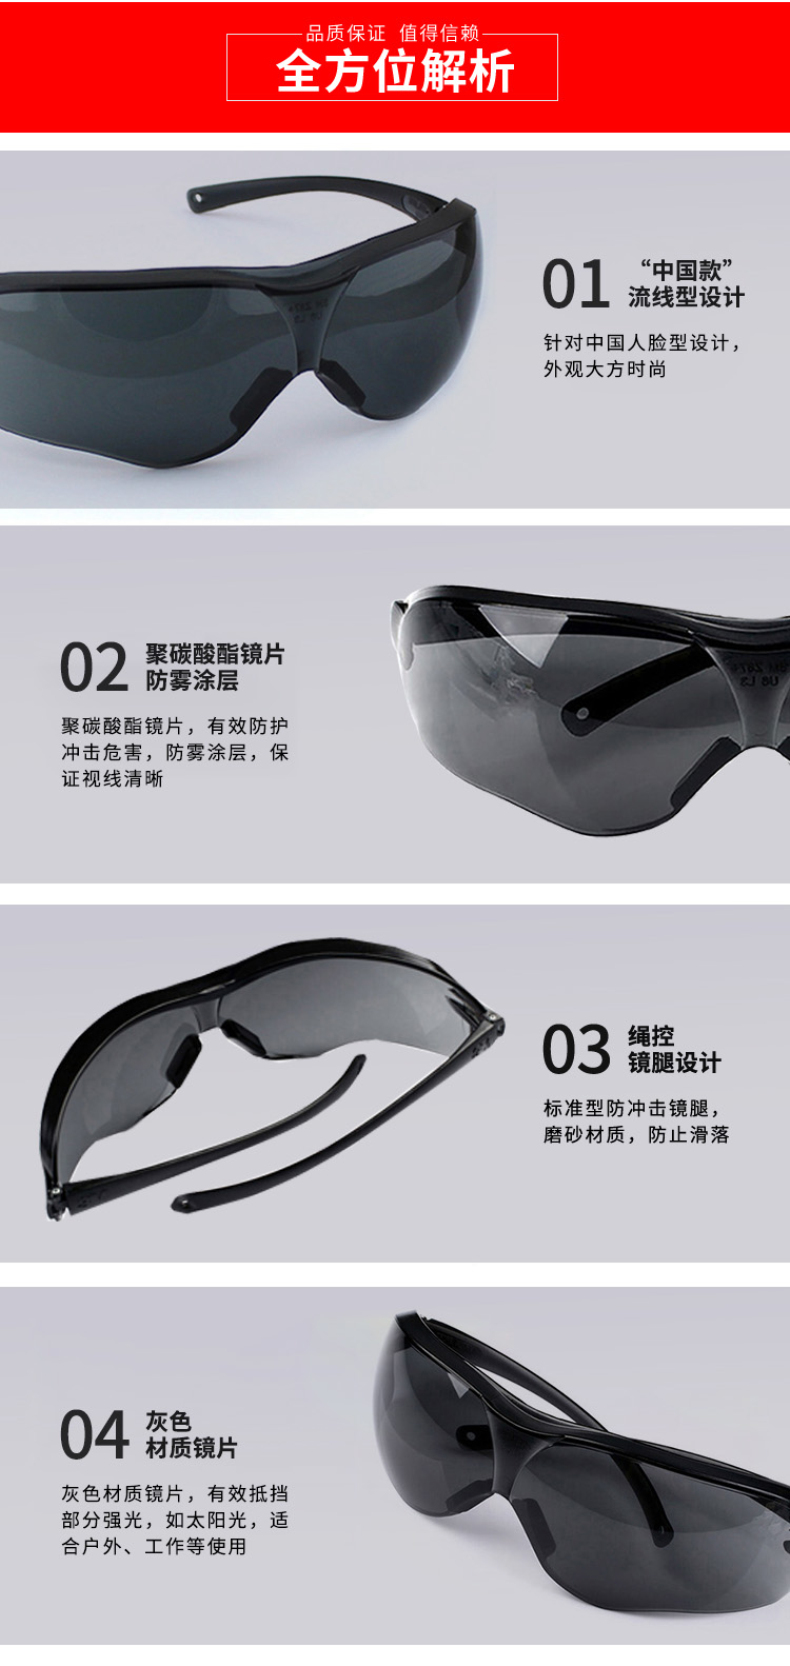 3M 中国轻便型防雾防护眼镜 10435  (灰色镜片 防辐射/防蓝光)